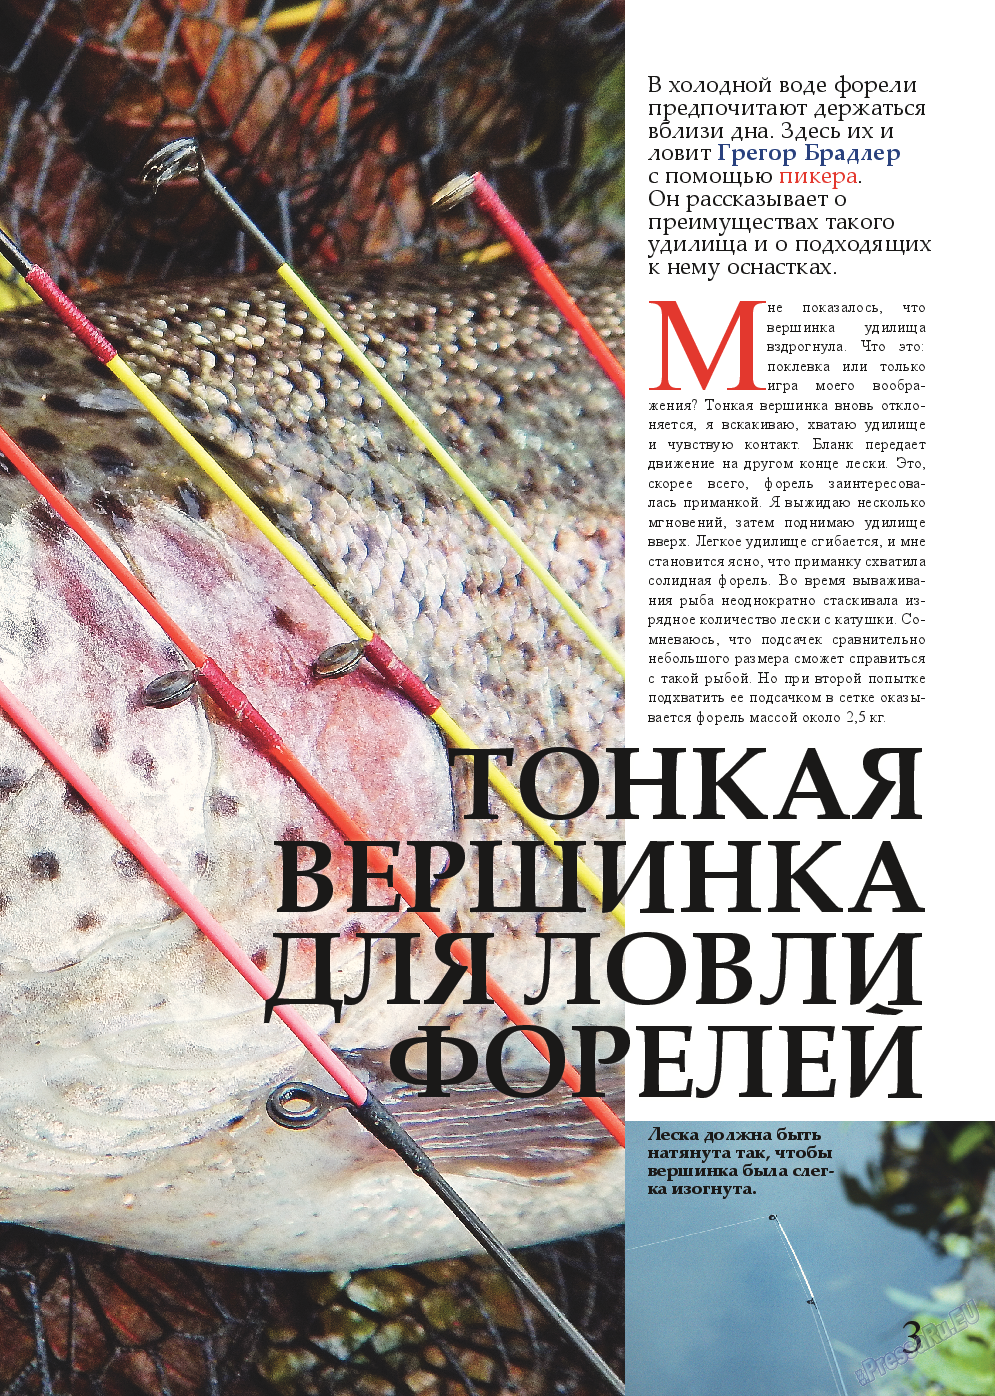 Рыбалка Plus, журнал. 2015 №2 стр.3